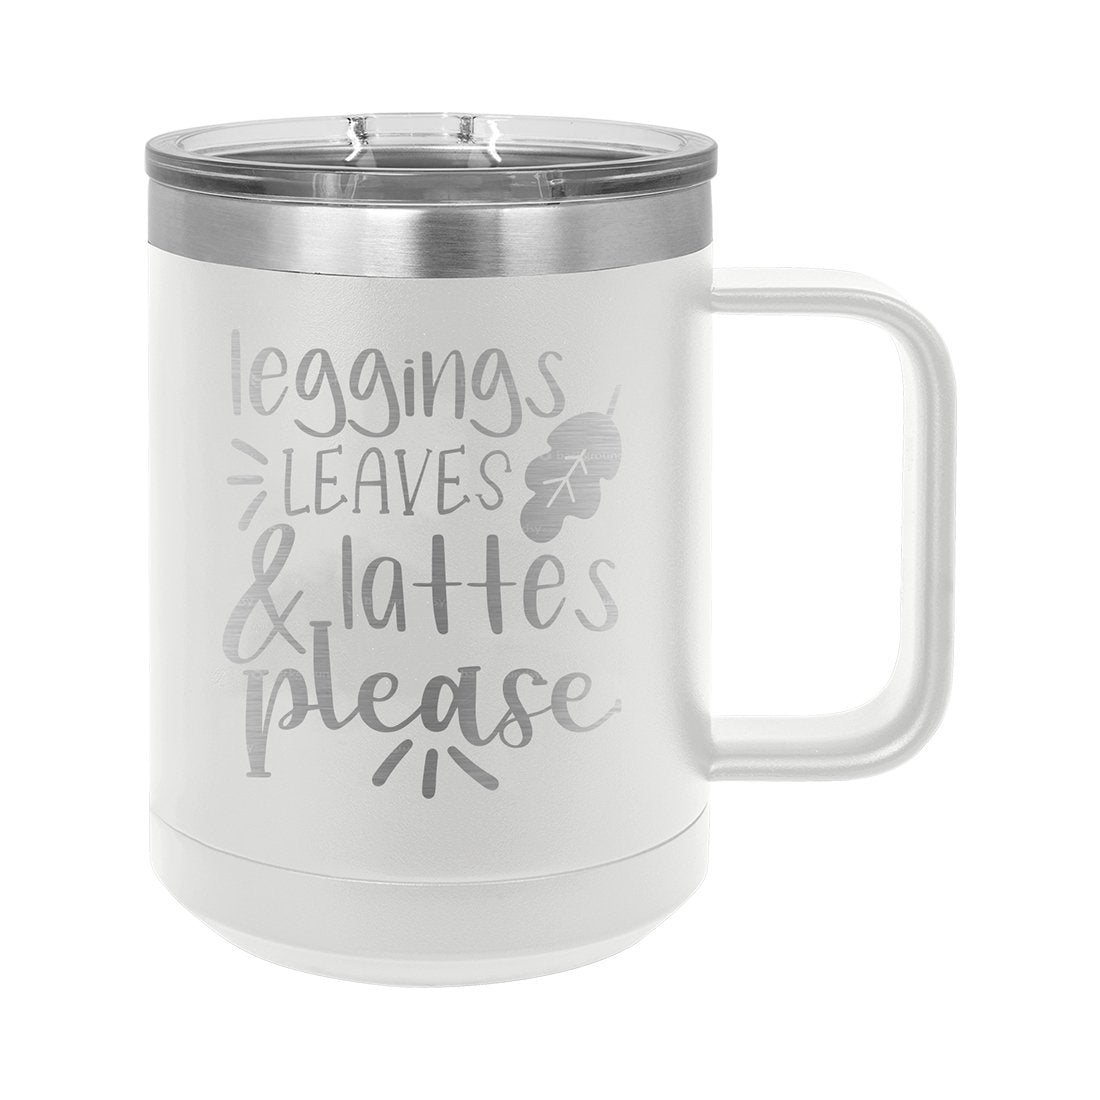 Leggings, Leaves, & Lattes White 15oz Insulated Mug - Bella Lia Boutique